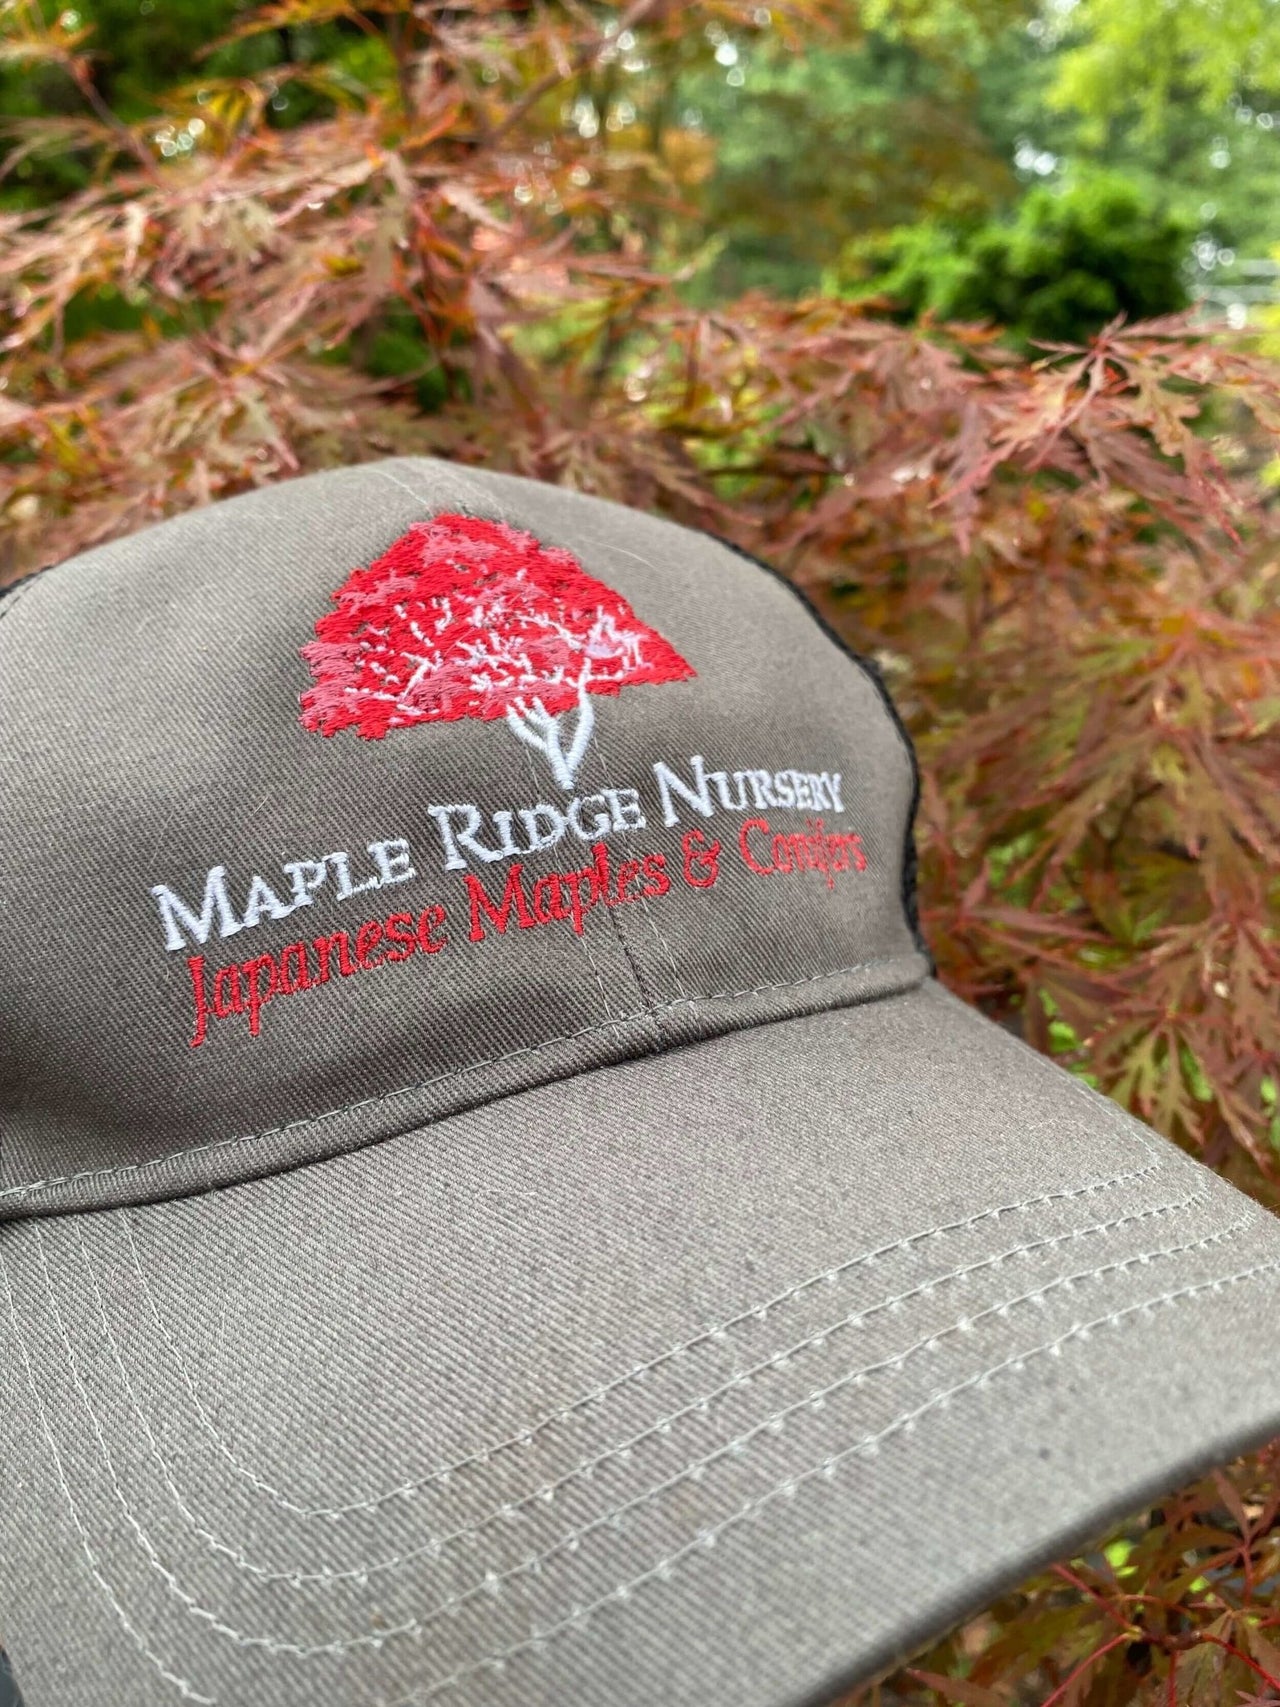 Maple Ridge Nursery Hat - mapleridgenursery